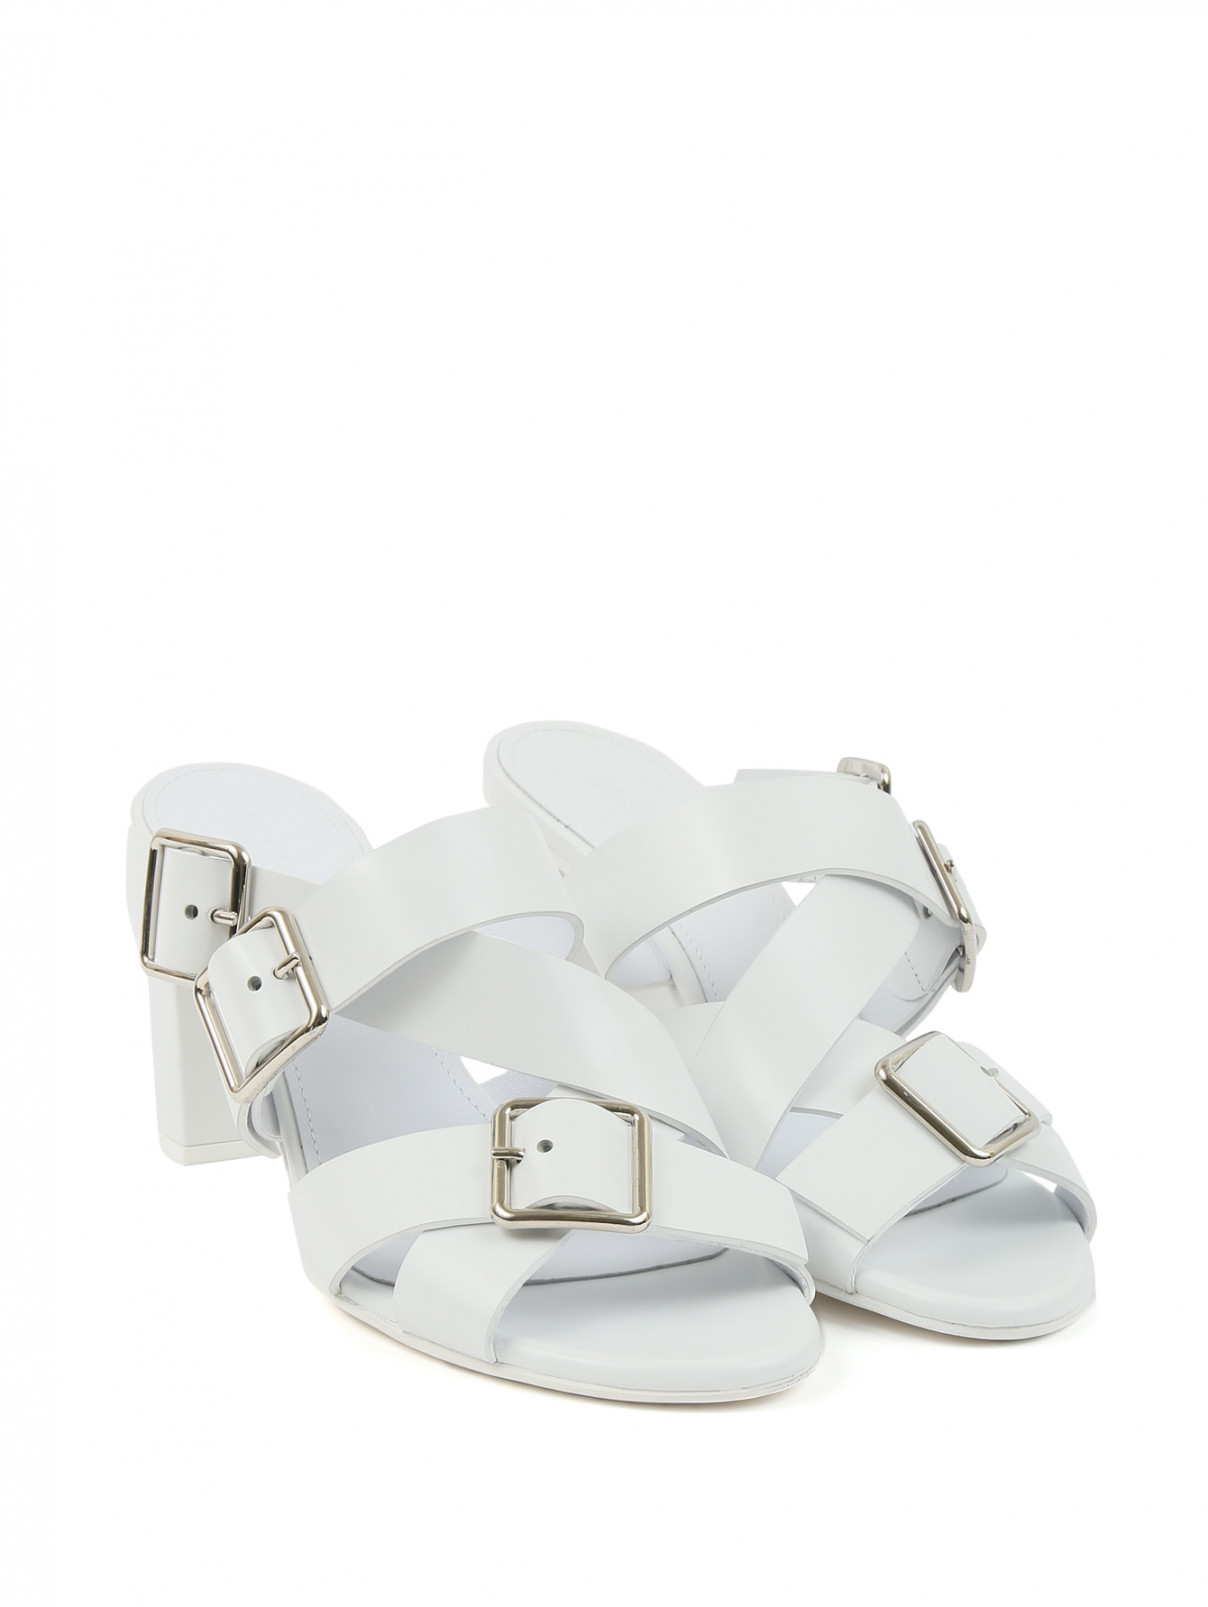 Босоножки из кожи на устойчивом каблуке Jil Sander  –  Общий вид  – Цвет:  Белый